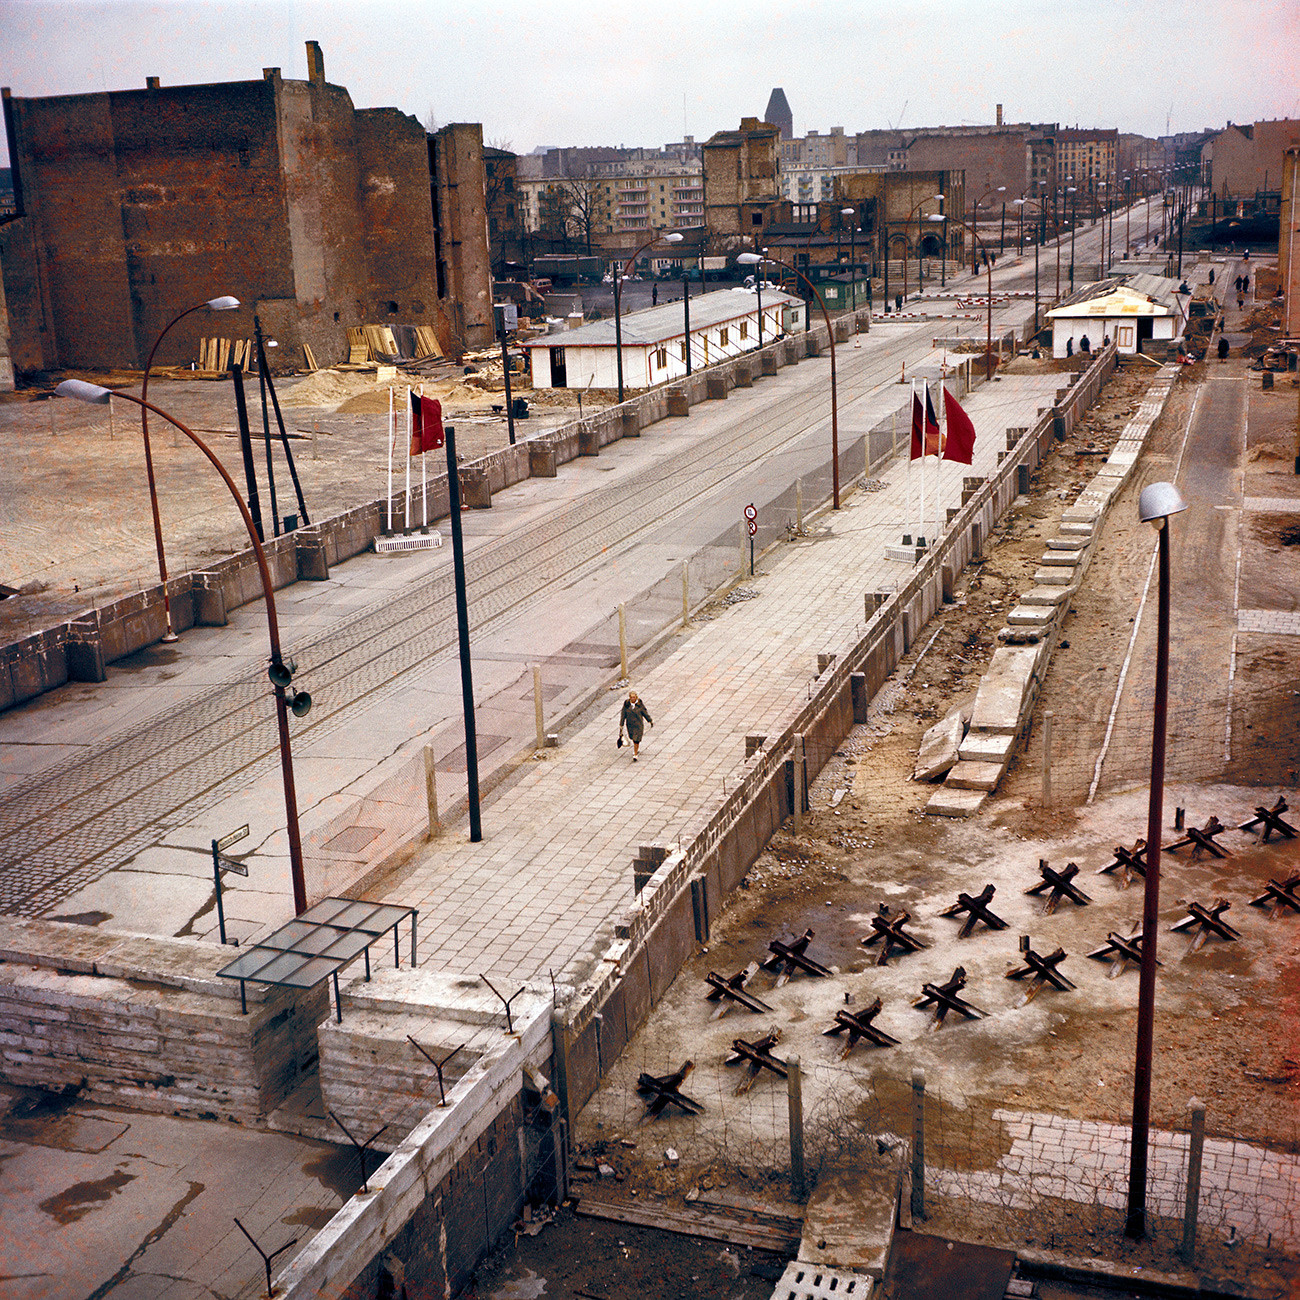 Немачка, Берлински зид током 1970-их.